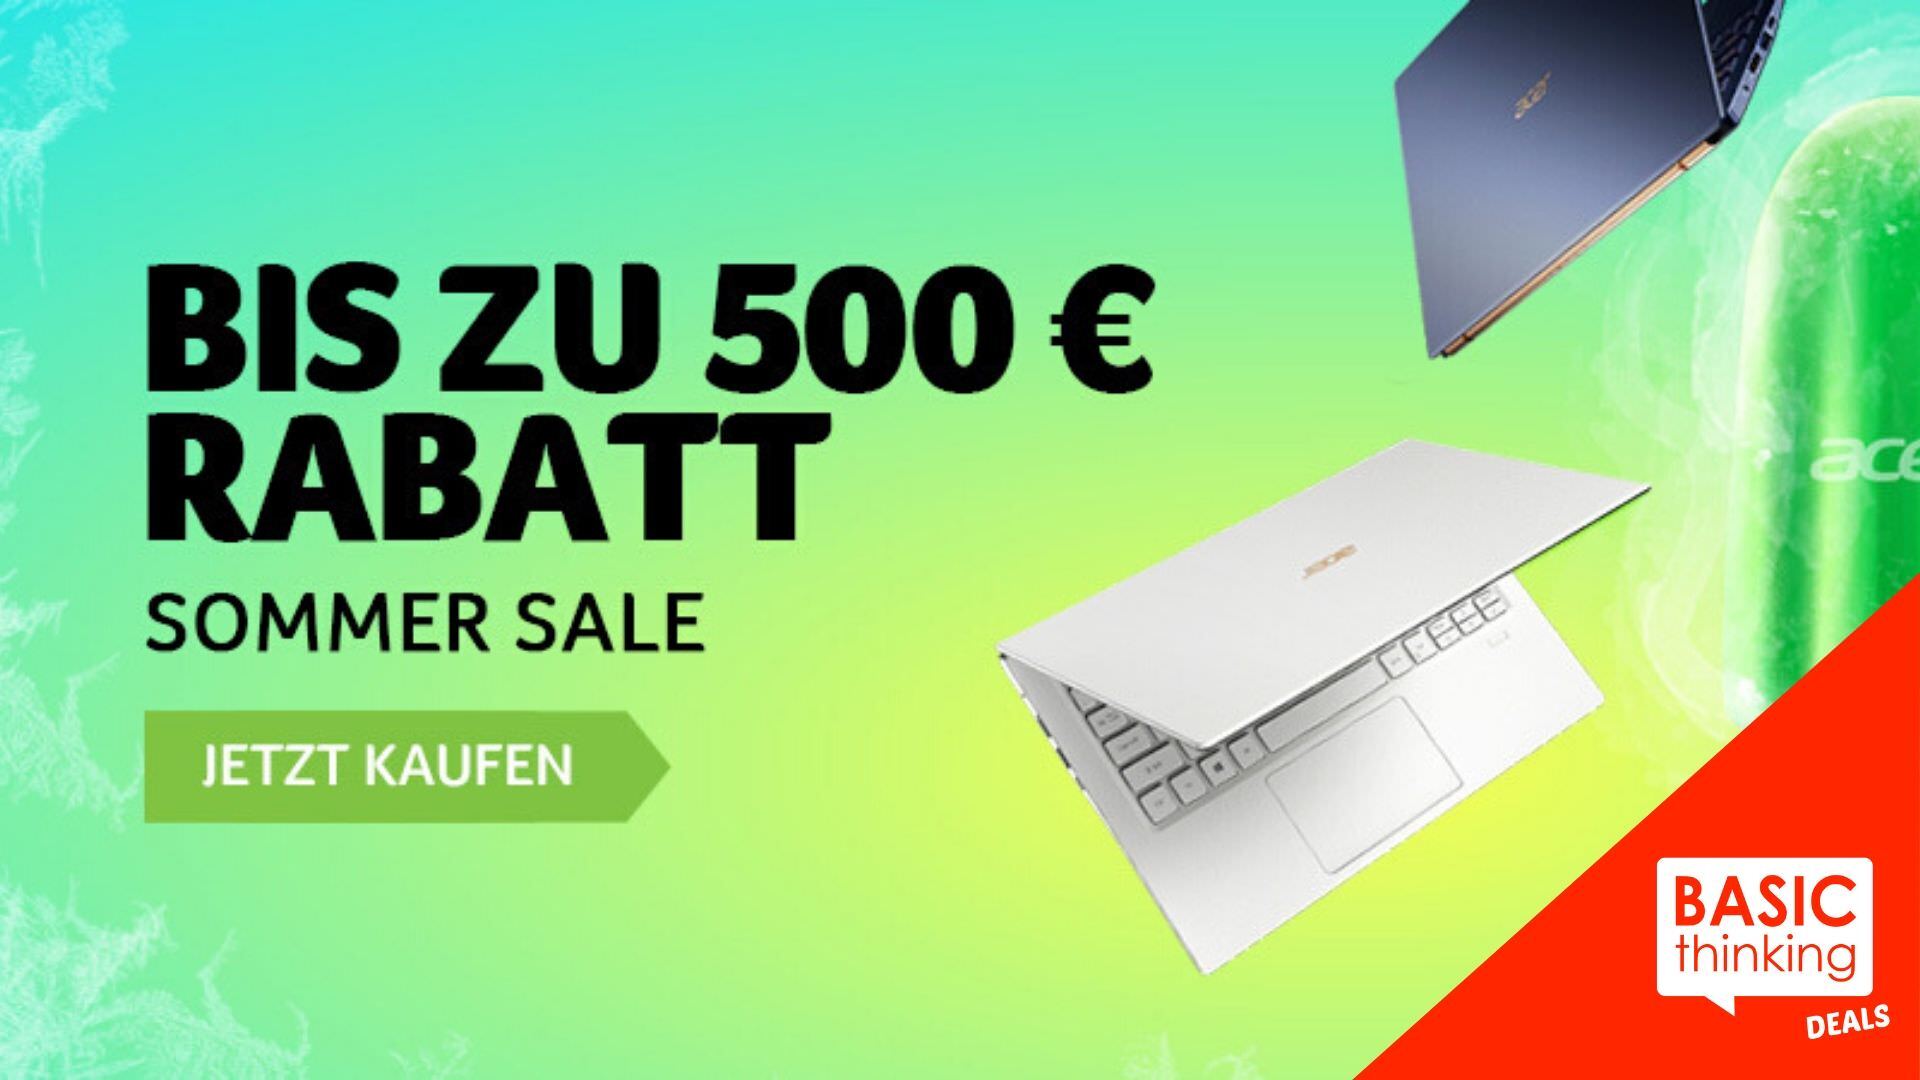 BT Deals Acer Summer Sale Deals